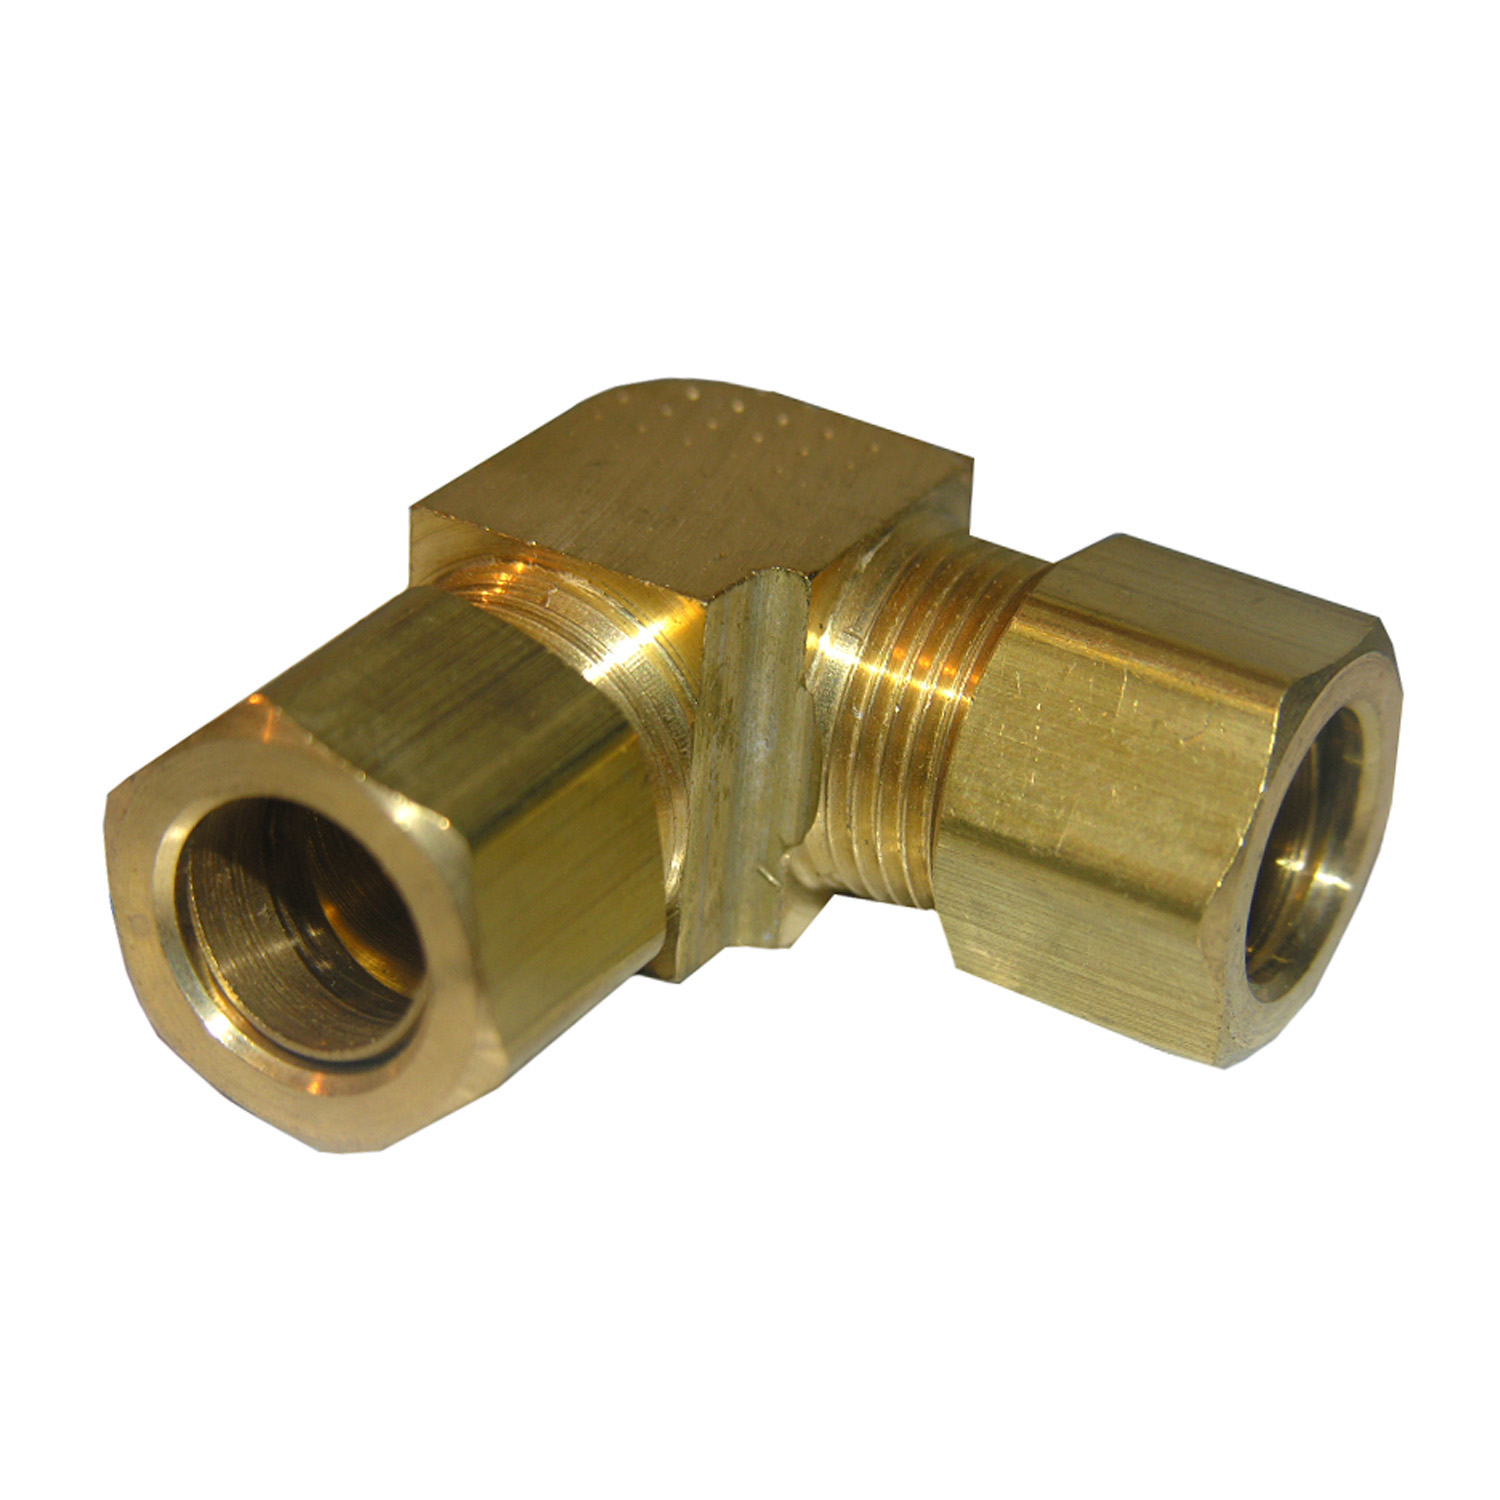 17-6549 Pipe Elbow, 1/2 in, Compression, 90 deg Angle, Brass, 200 psi Pressure